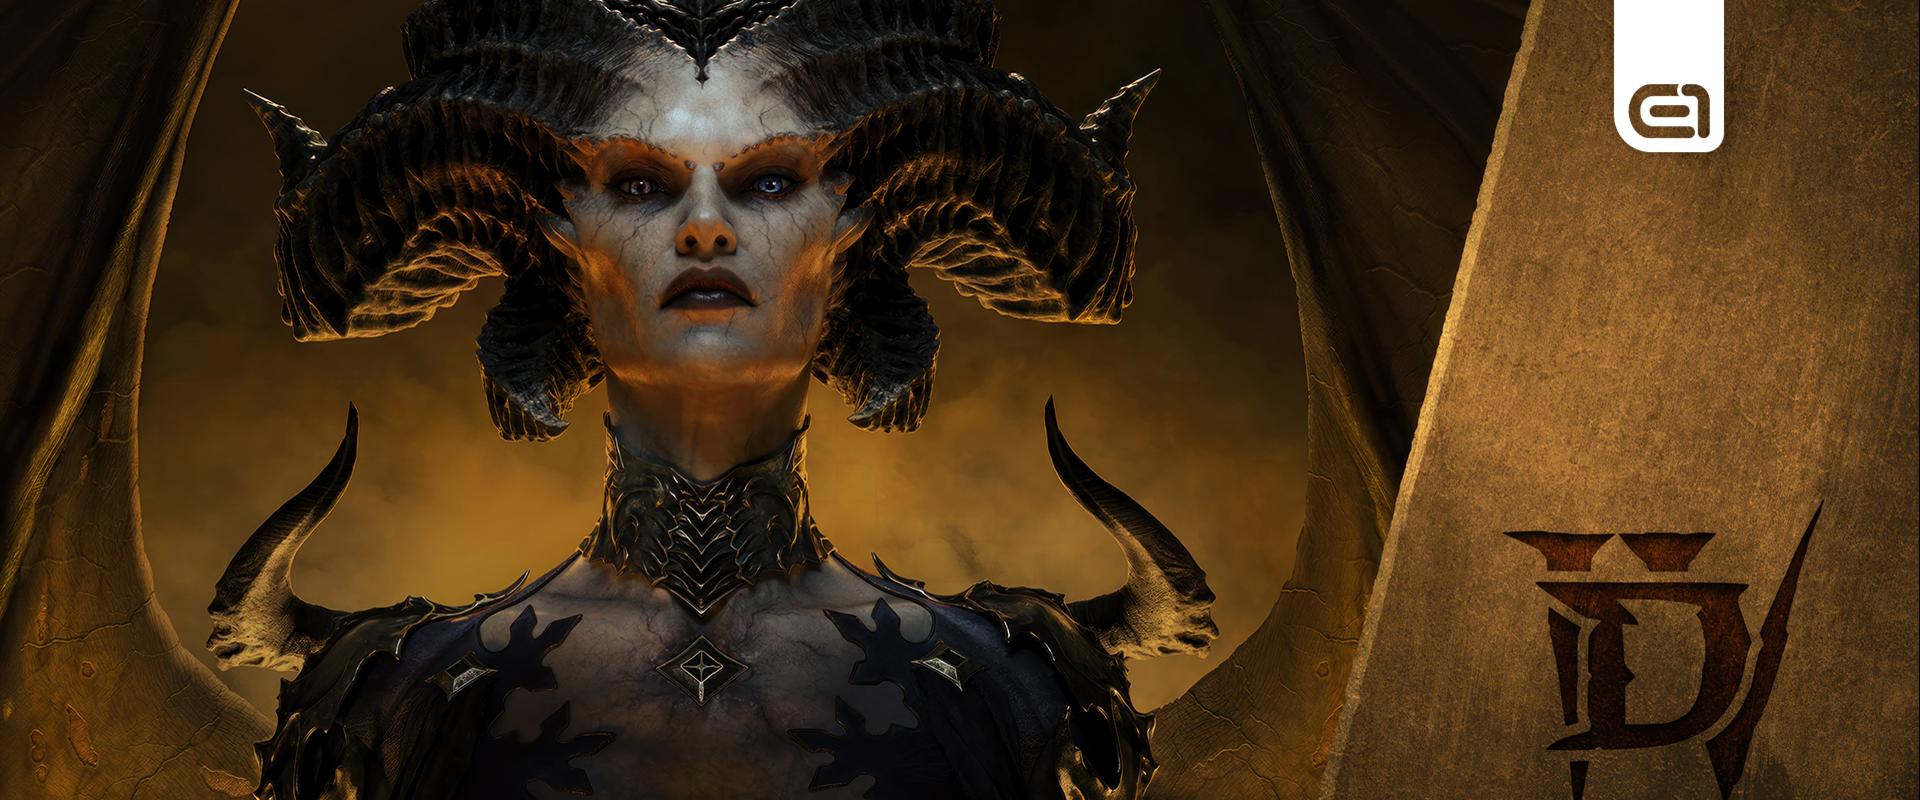 Nyugodj békében Lilith! Egy perc alatt gázoltak át a Diablo IV legnehezebb bossán